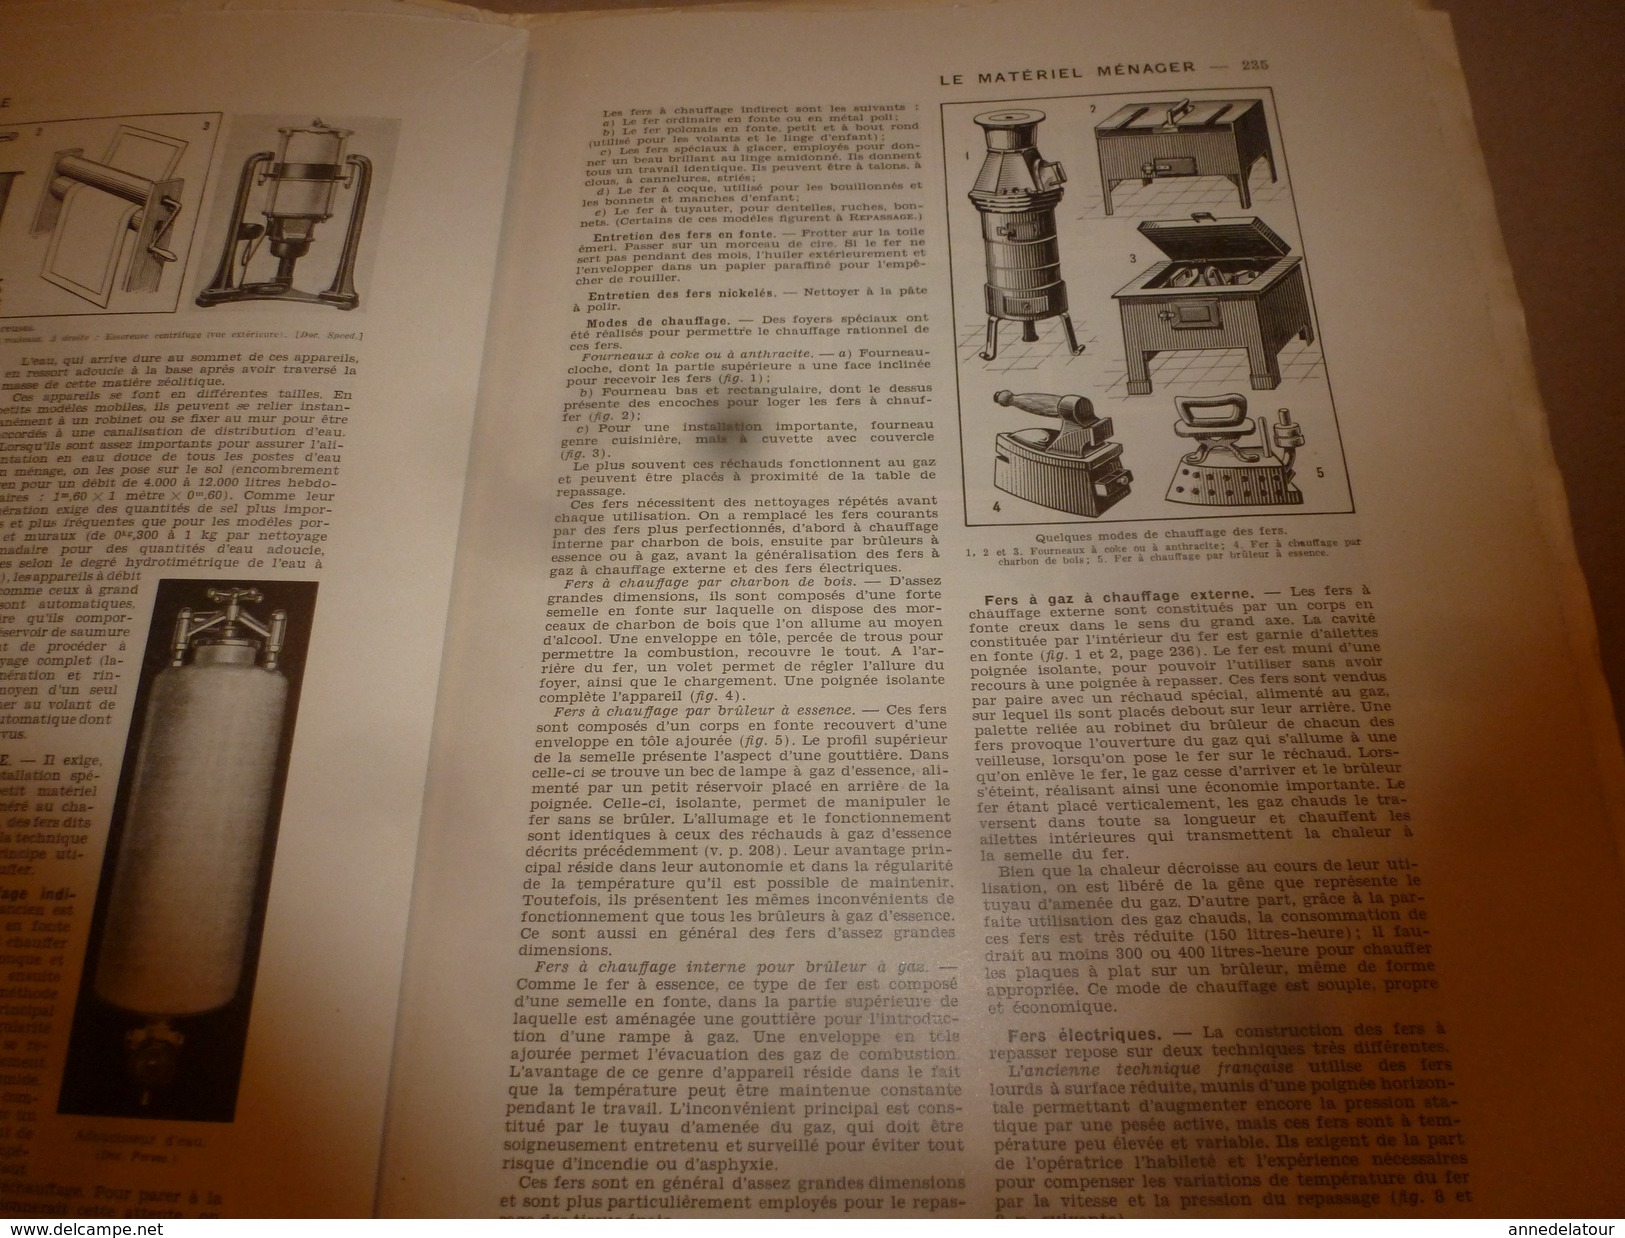 1950 ENCYCLOPEDIE FAMILIALE LAROUSSE -> Le matériel ménager (très important documentaire texte ,photos et dessins)